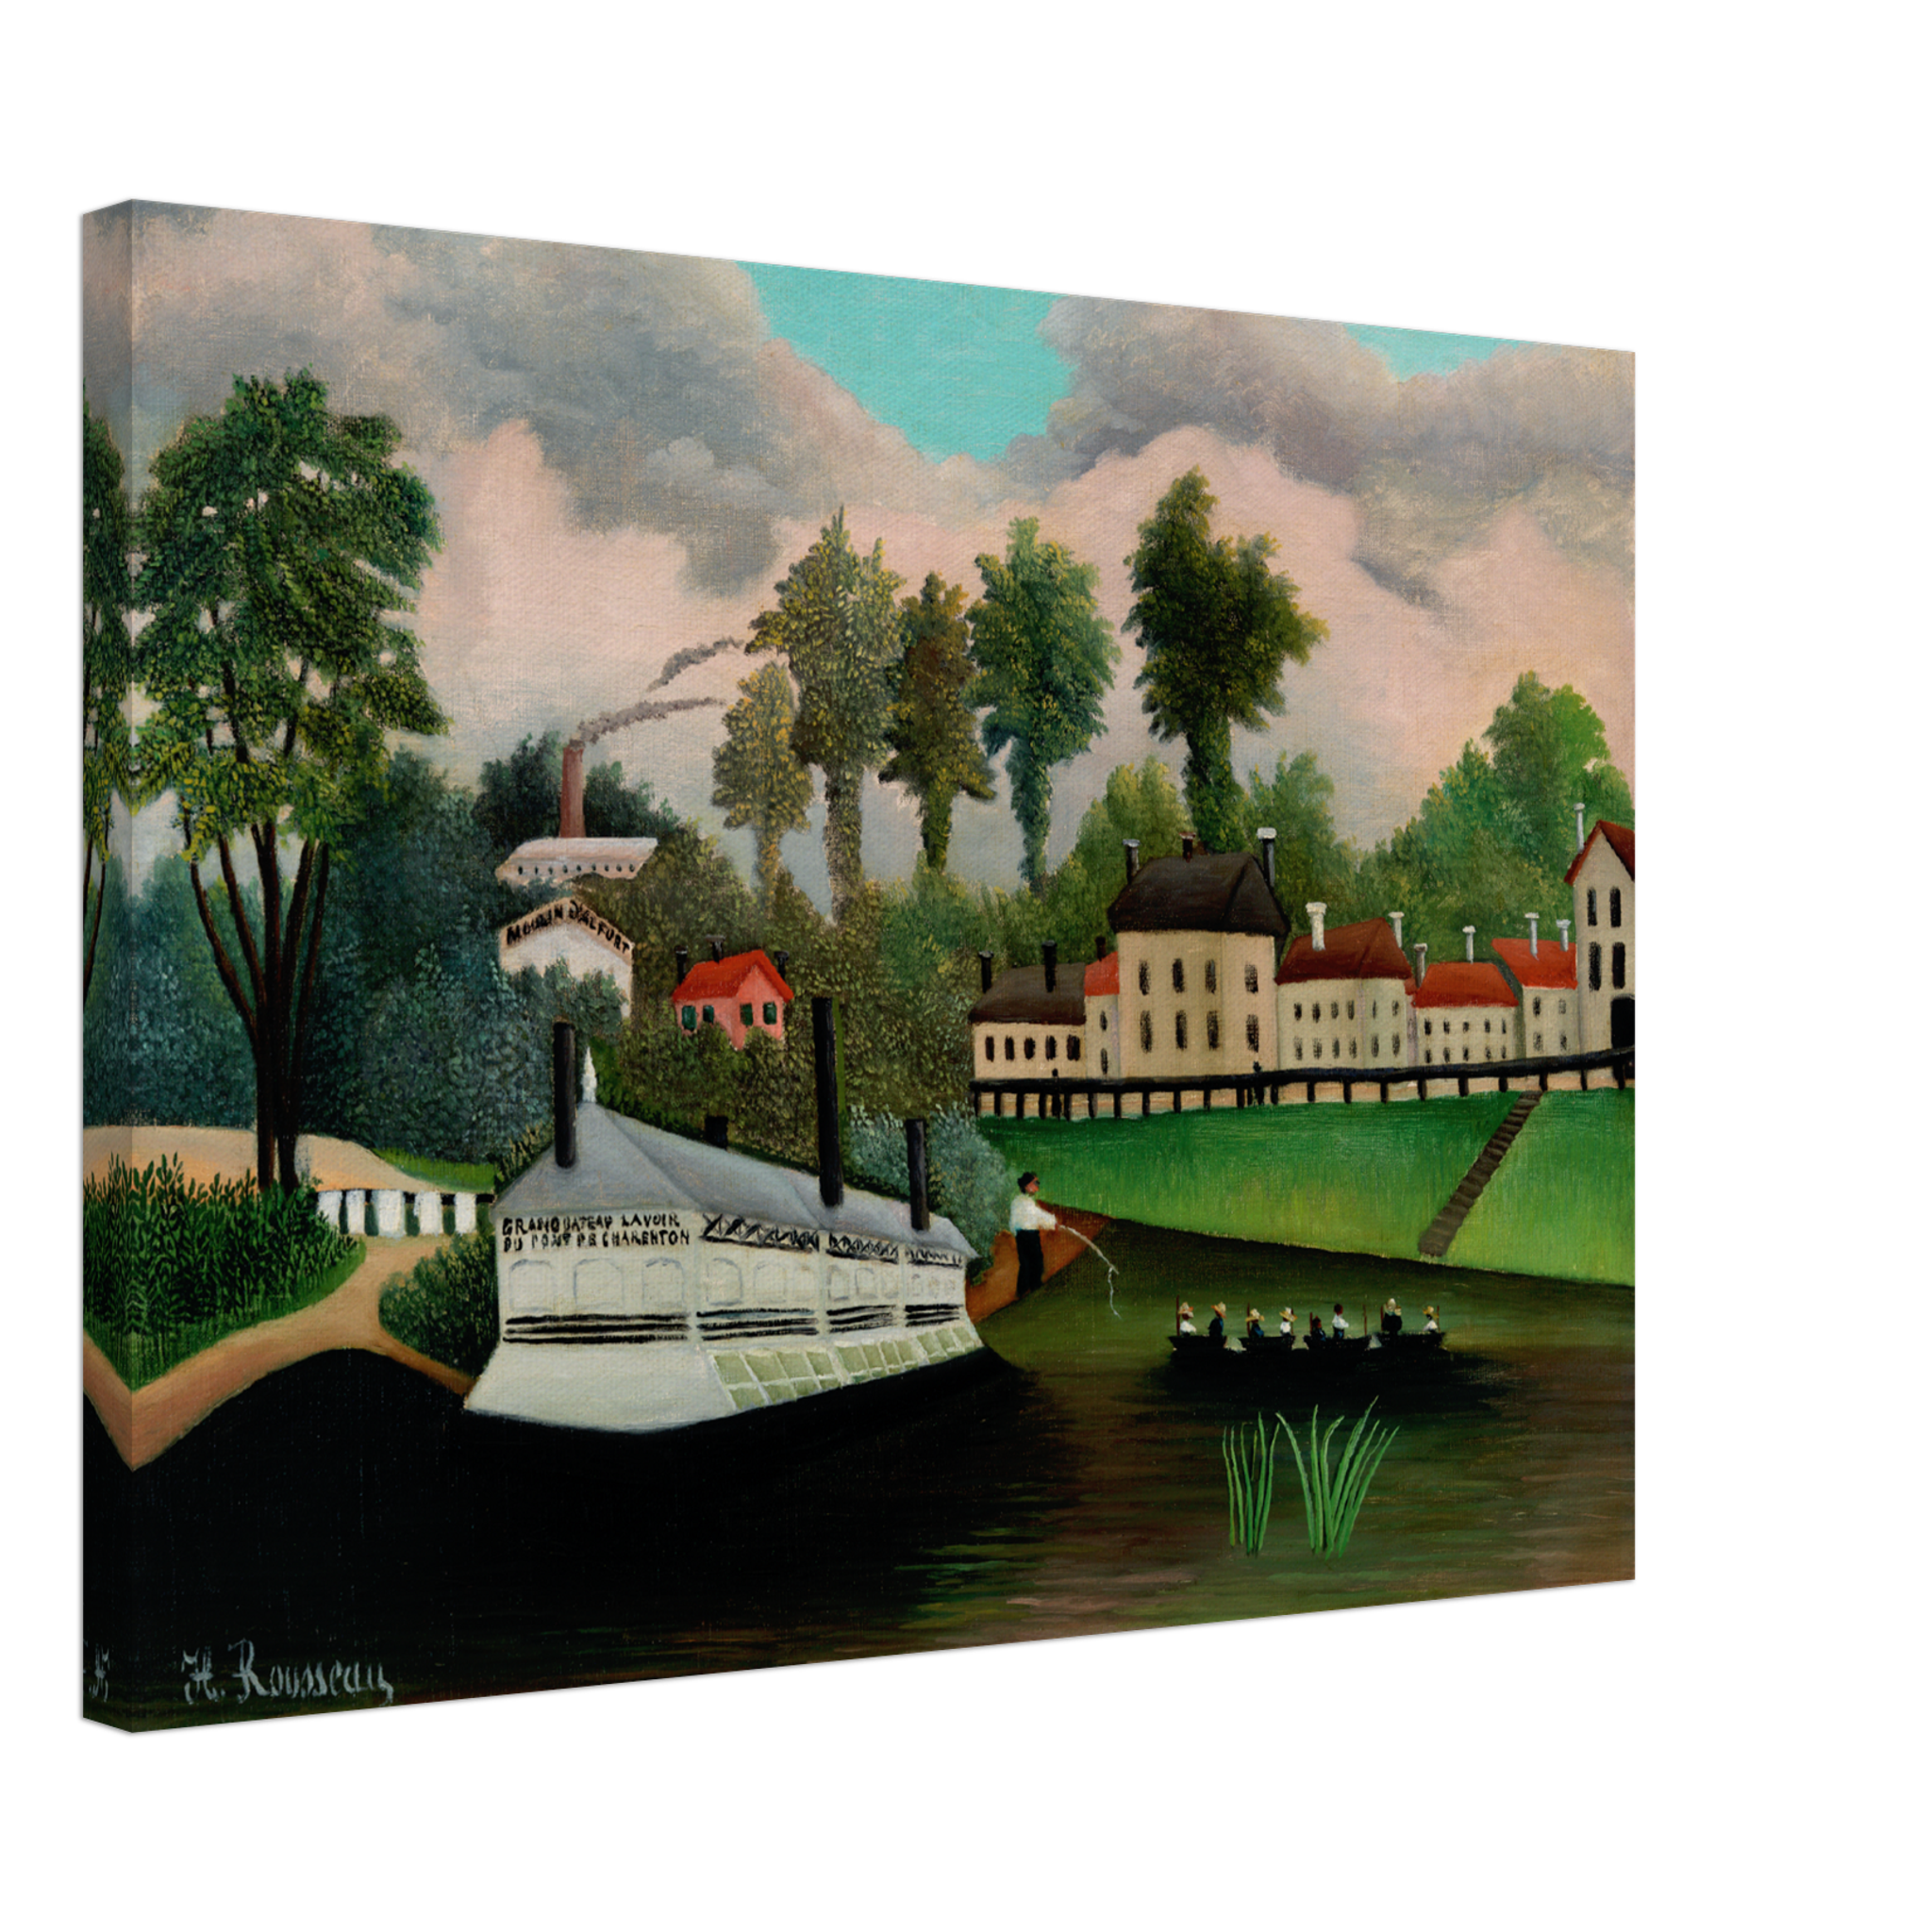 The Laundry Boat of Pont de Charenton Canvas